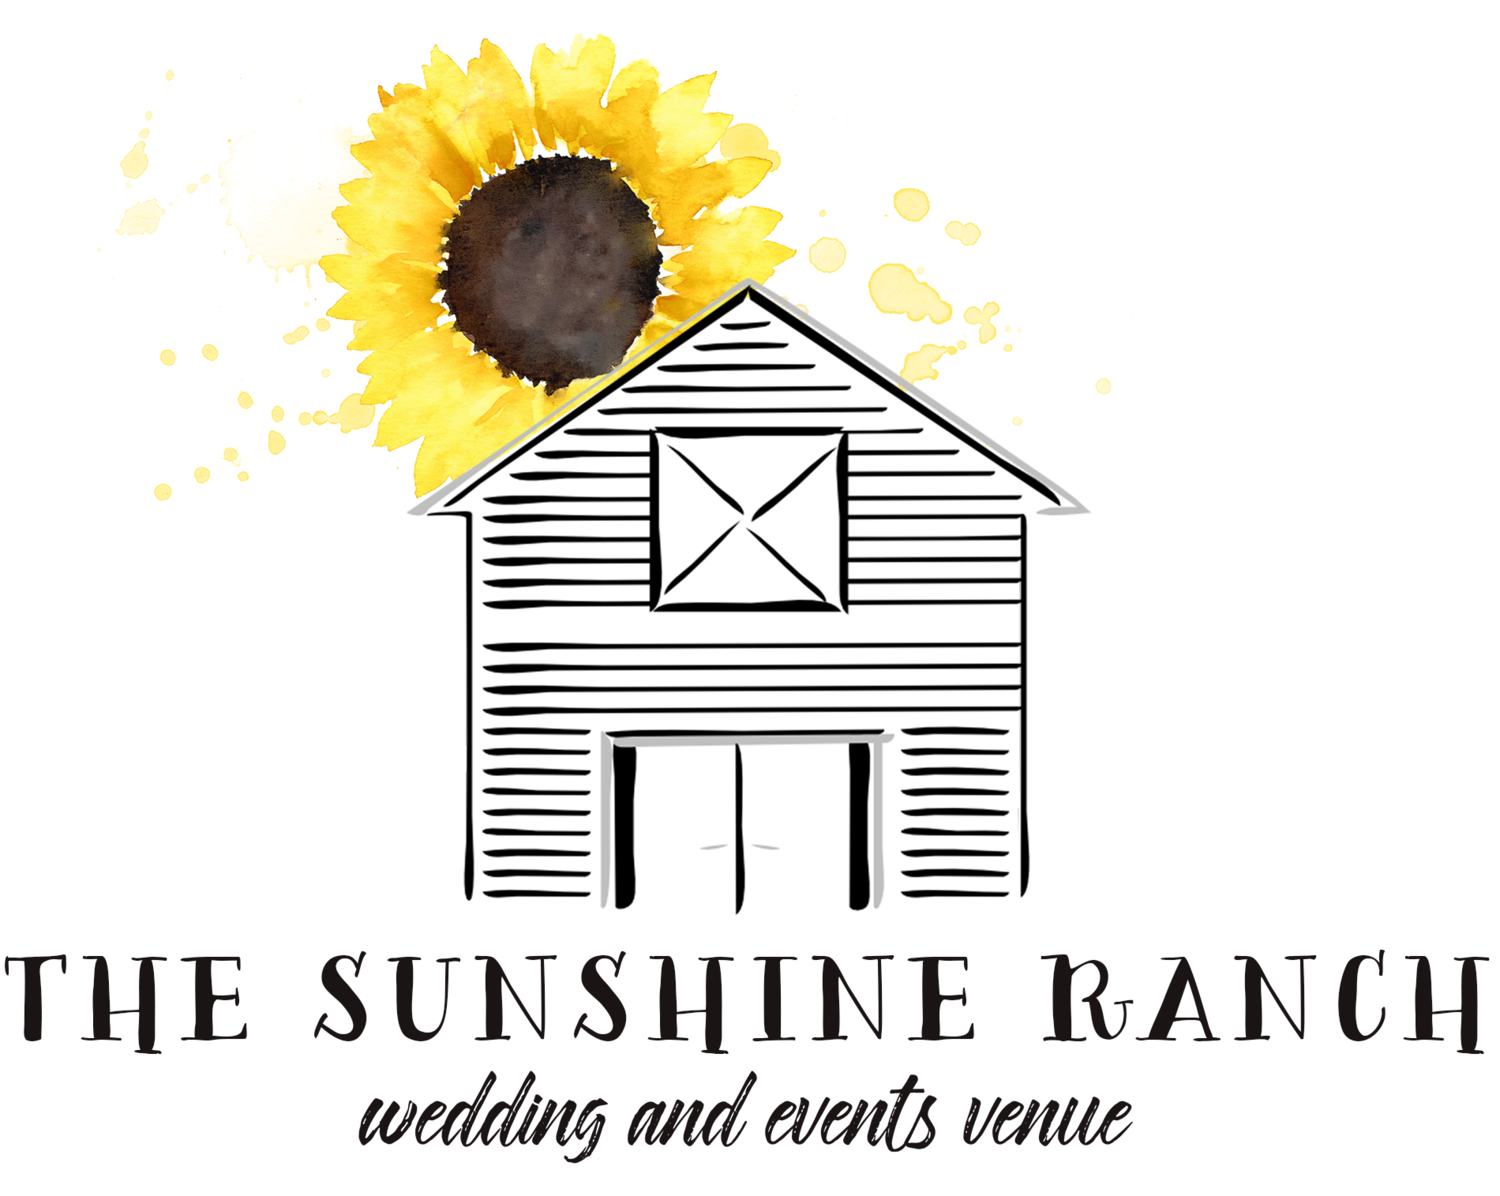 The Sunshine Ranch